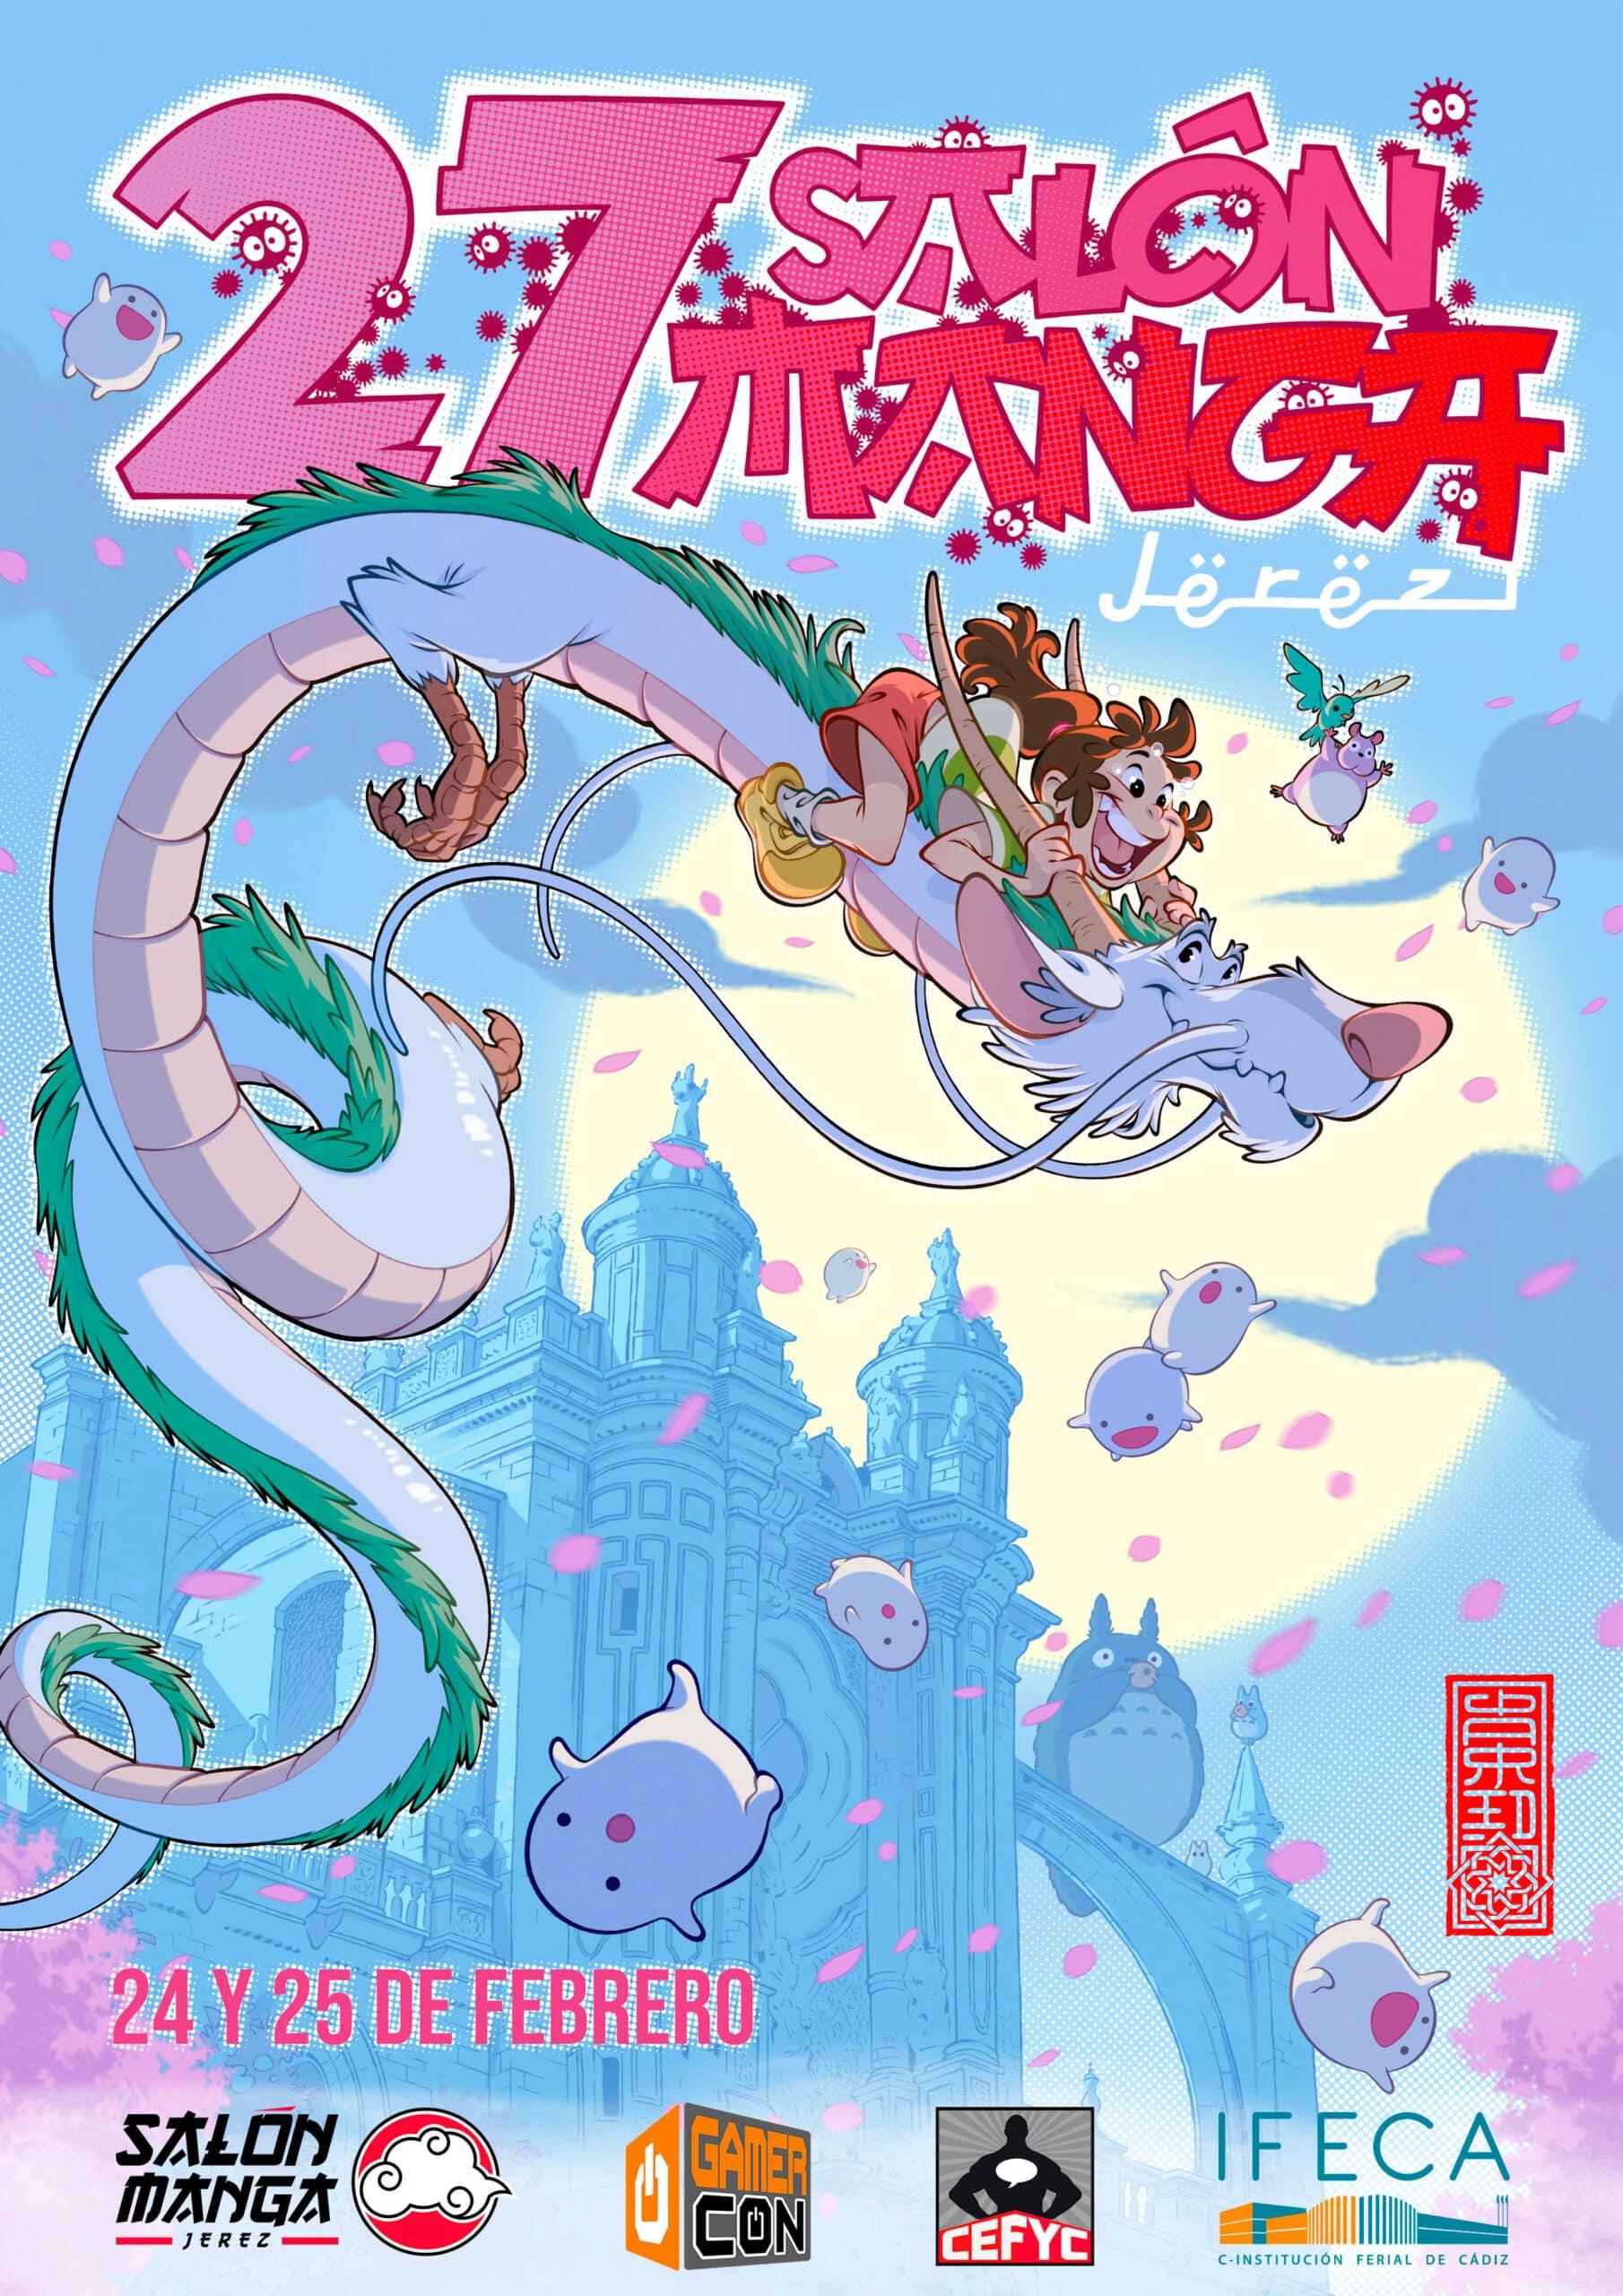 Presentado el cartel oficial del 27º Salón Manga de Jerez: Año del Dragón